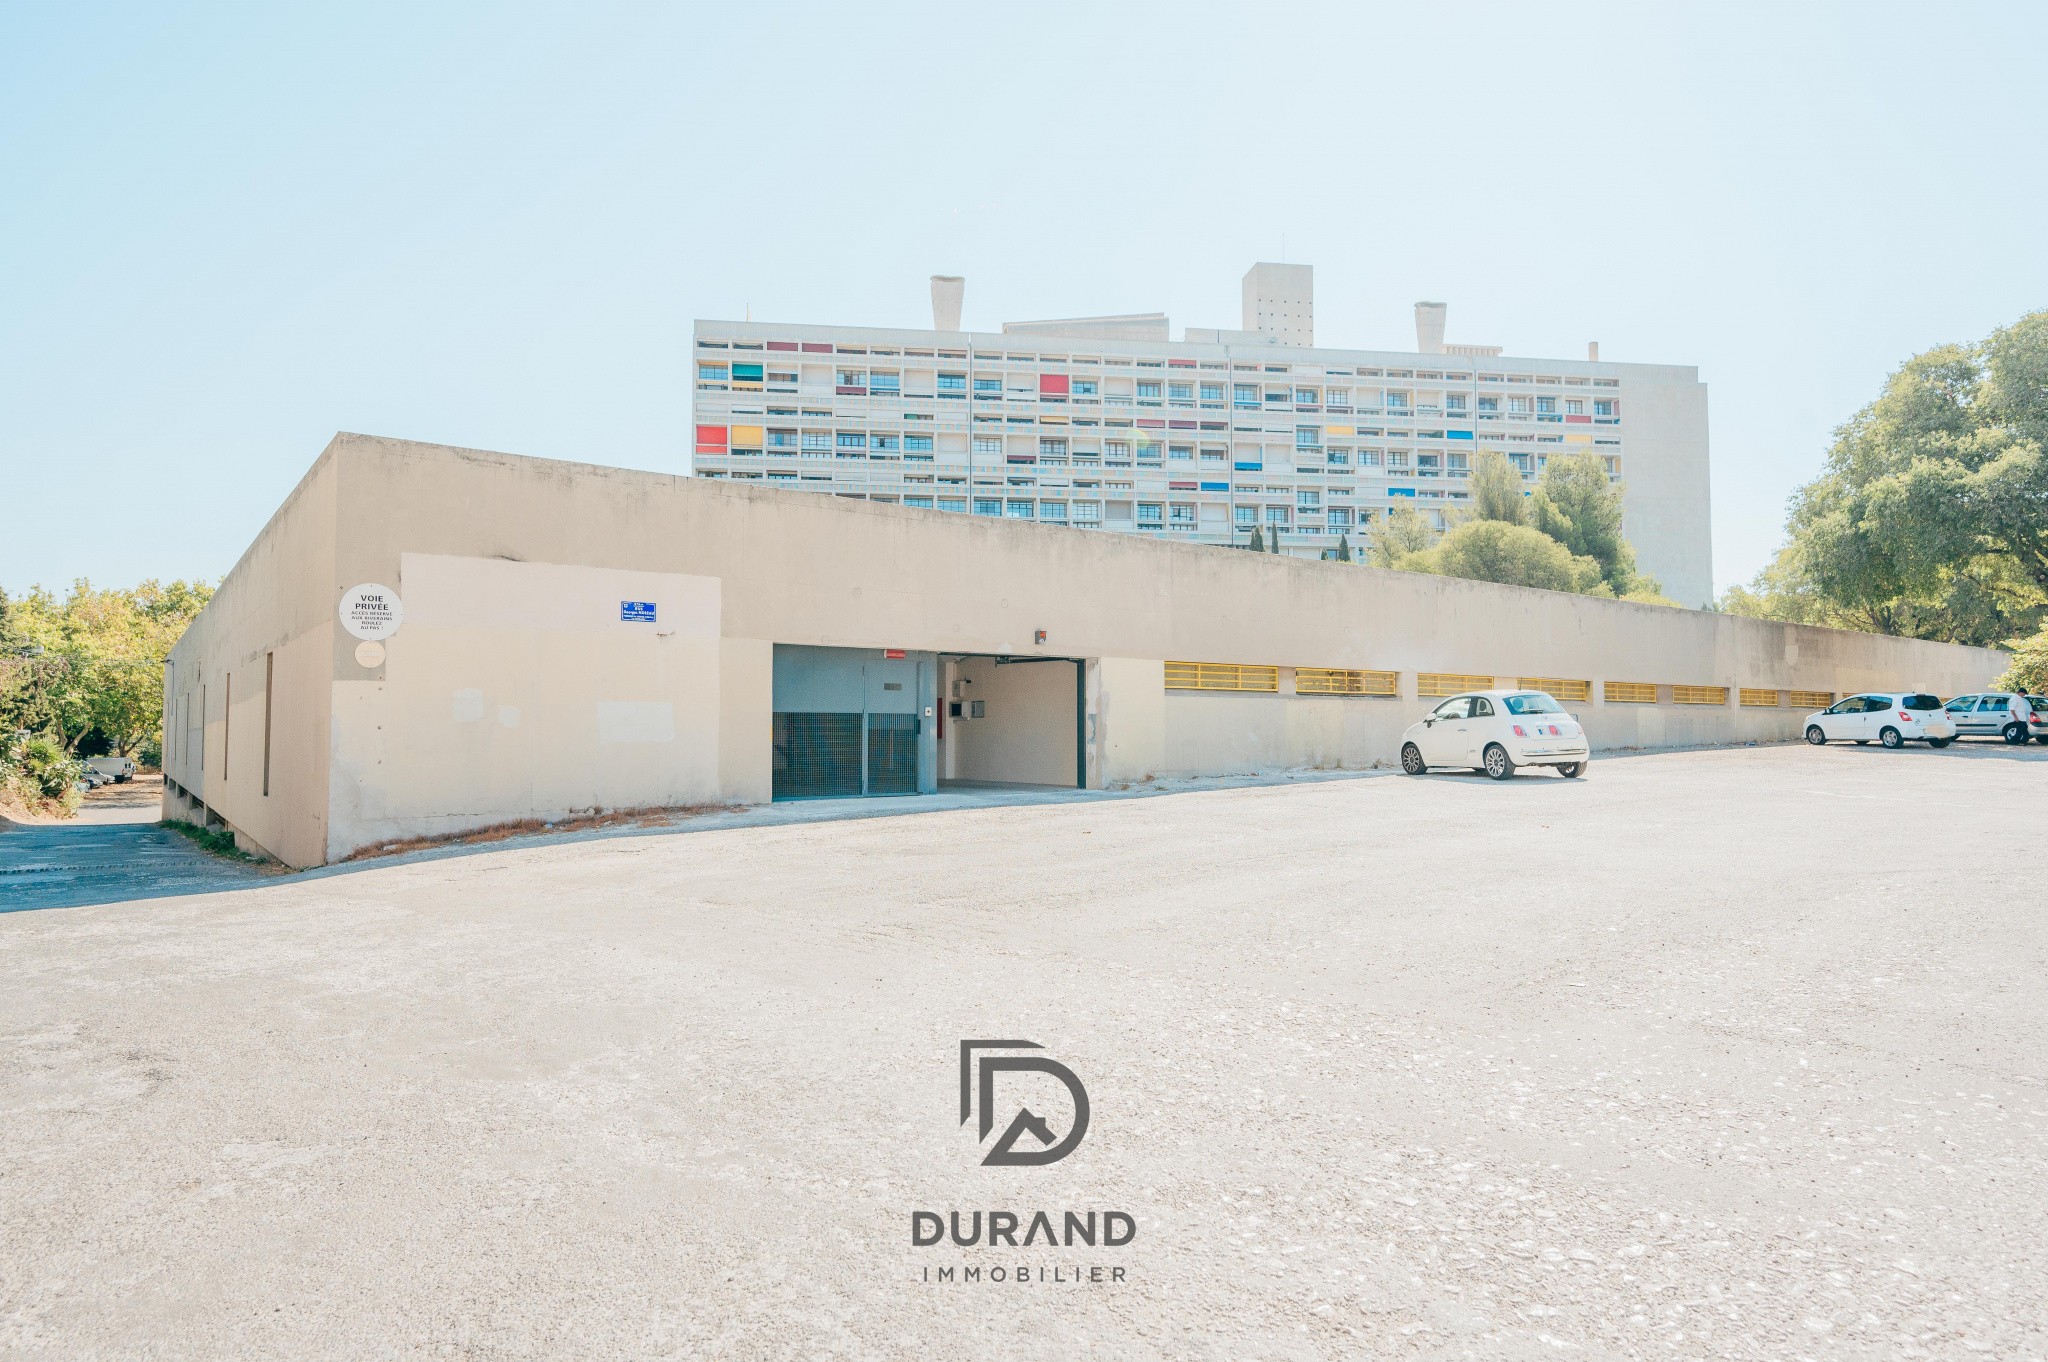 Vente Garage / Parking à Marseille 8e arrondissement 0 pièce